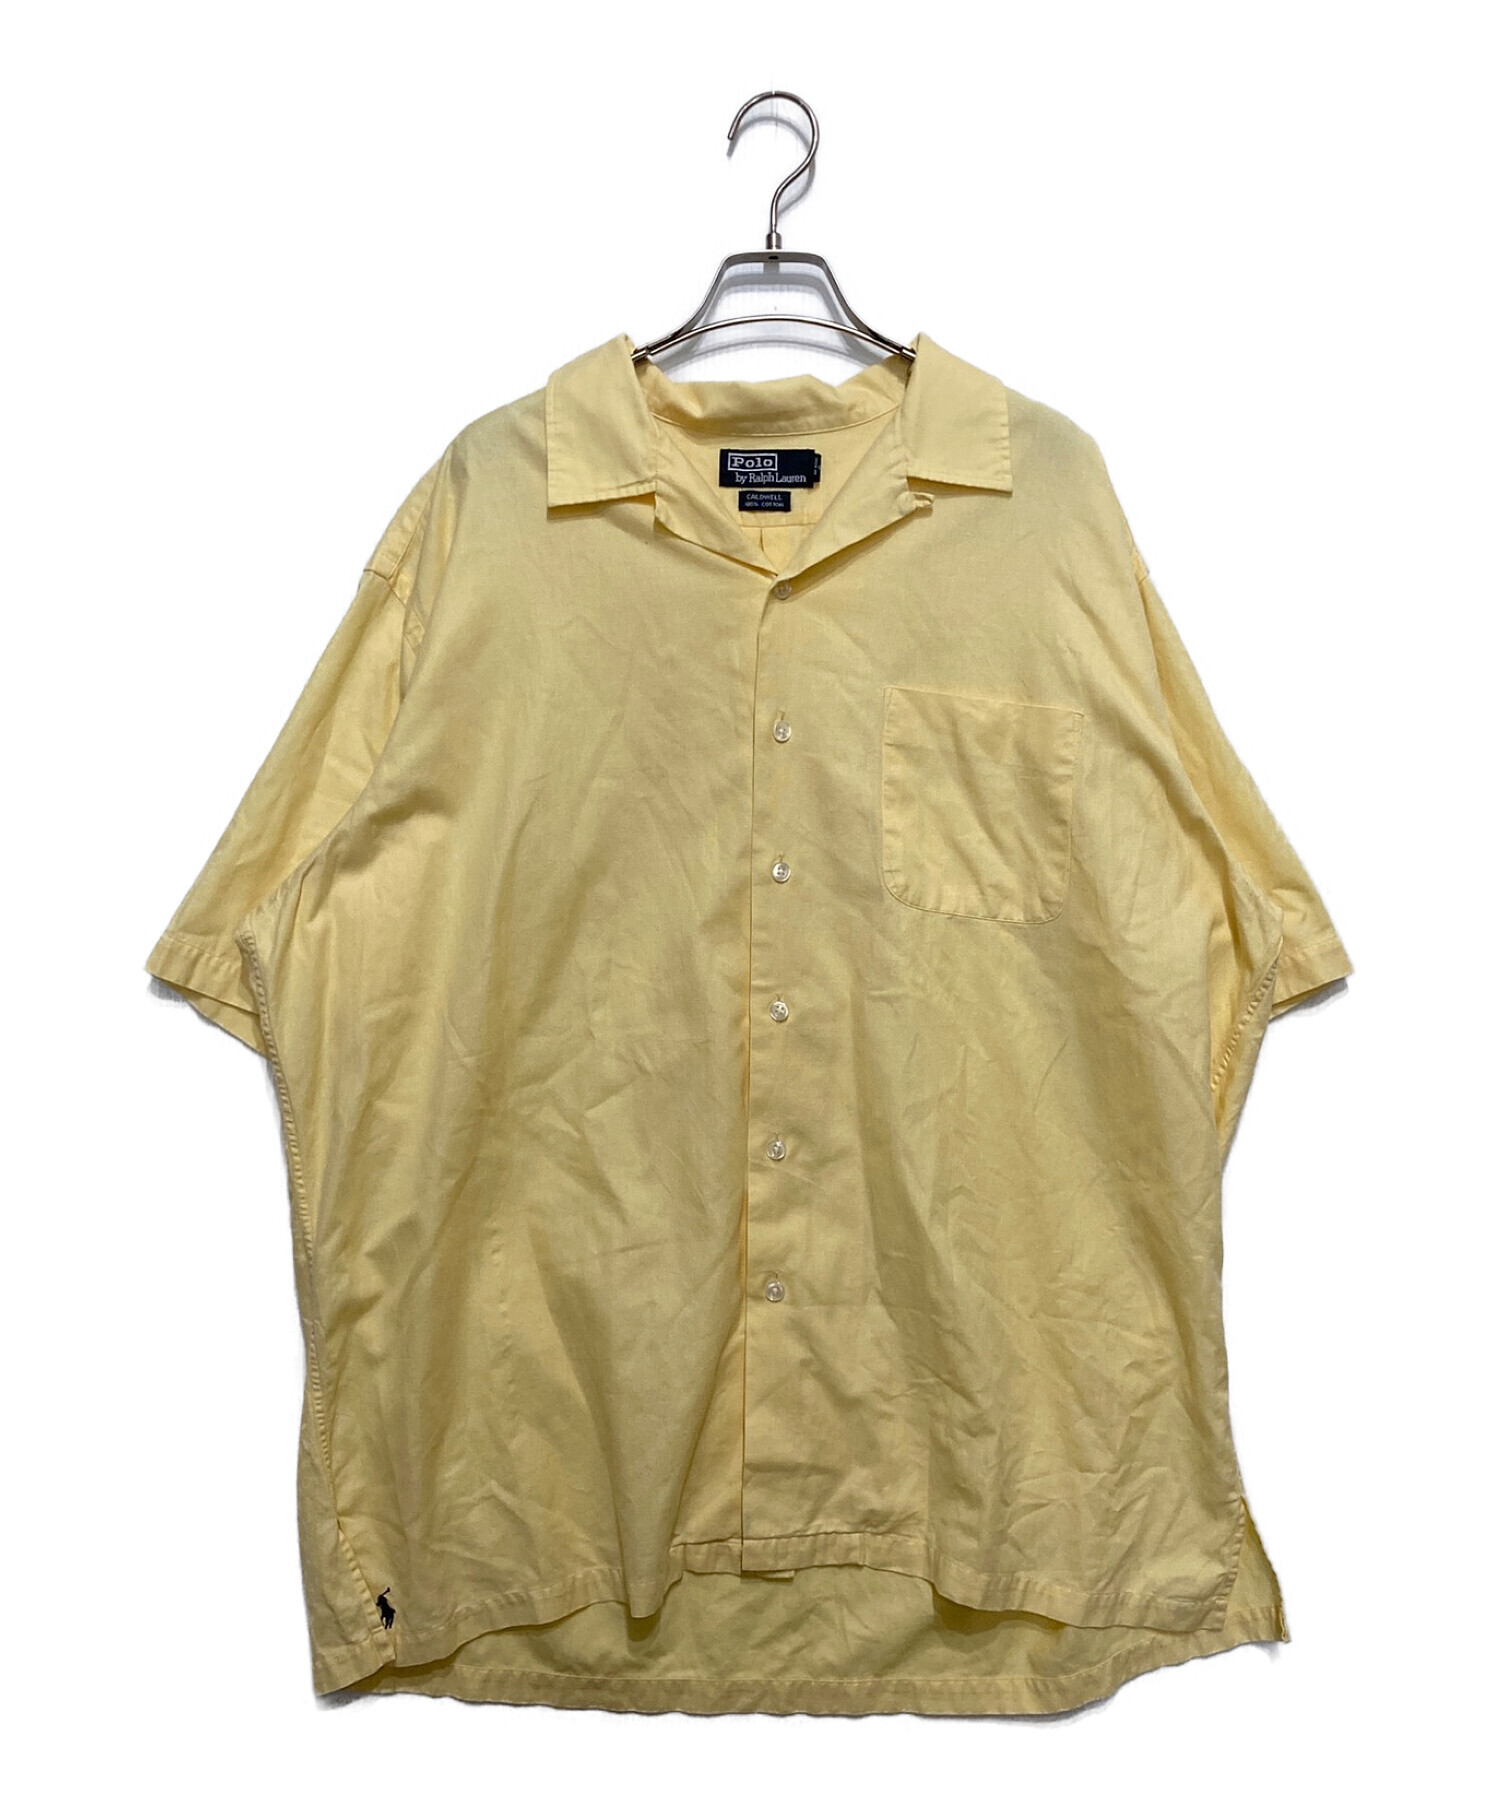 POLO RALPH LAUREN (ポロ・ラルフローレン) CALDWELLオープンカラーシャツ イエロー サイズ:XL